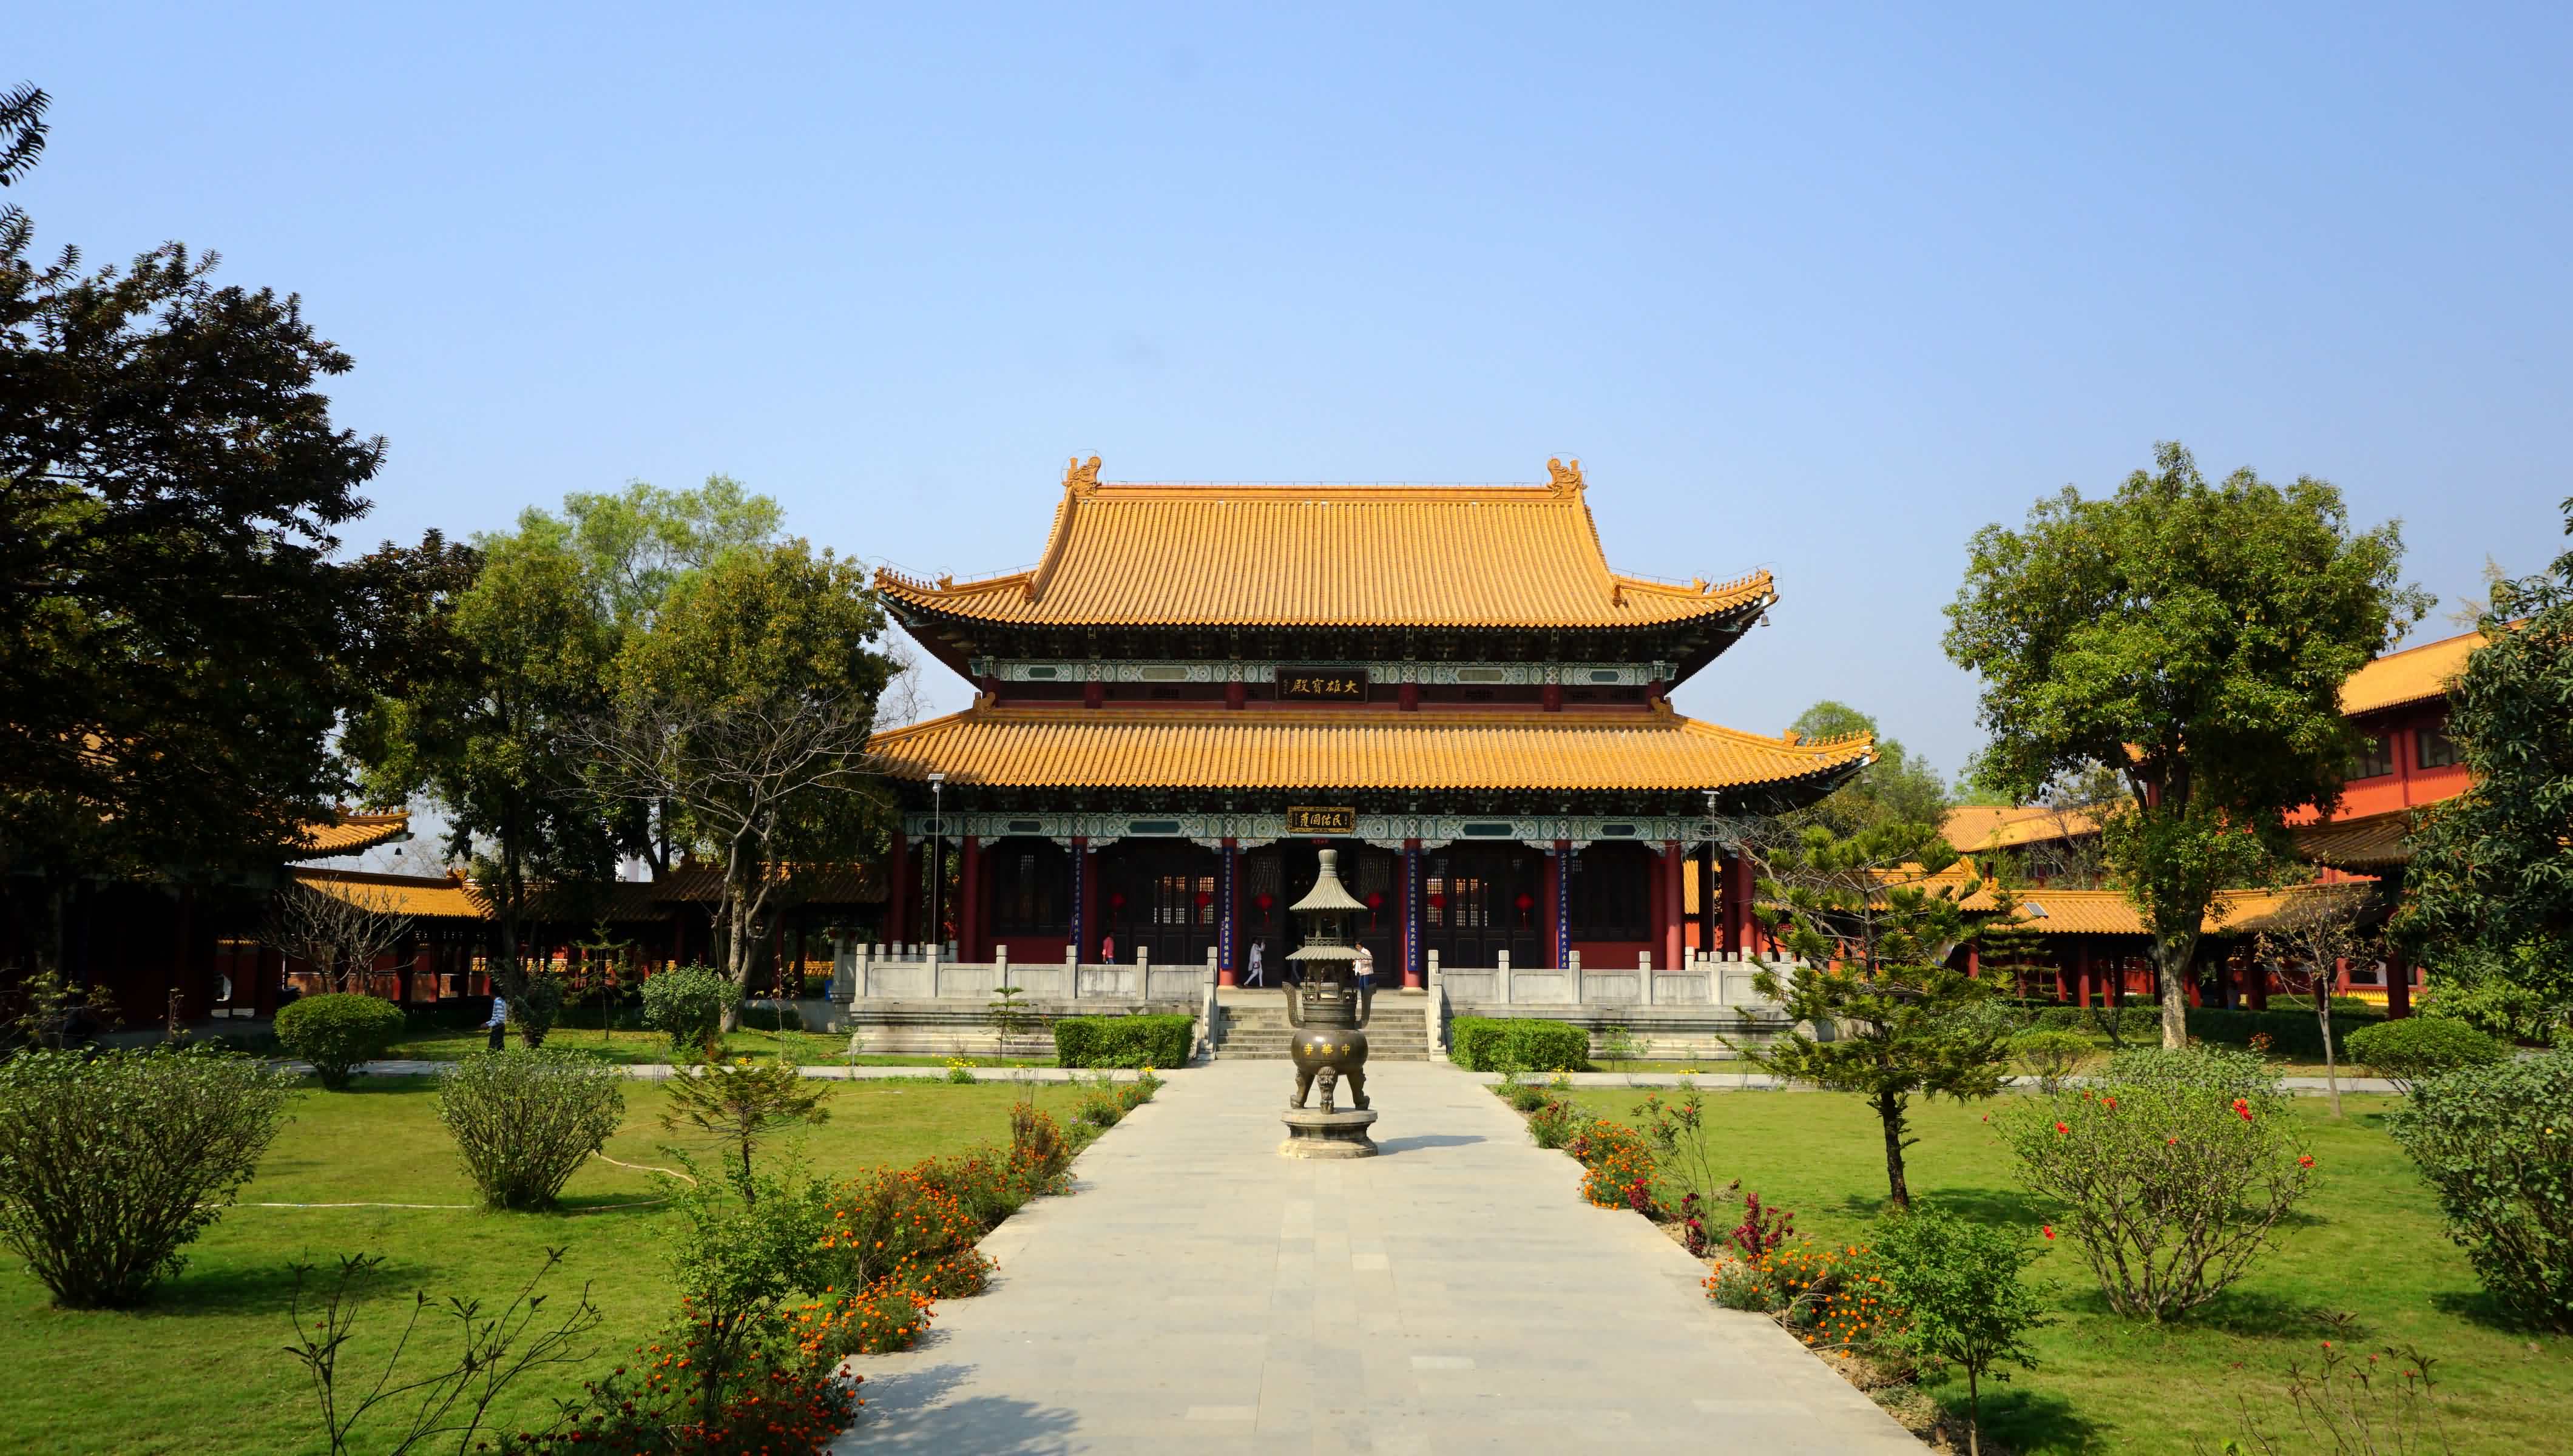 在中华寺对面是“韩国寺（Korea Temple）”。寺庙正殿高大雄伟，按青瓦台风格建造。